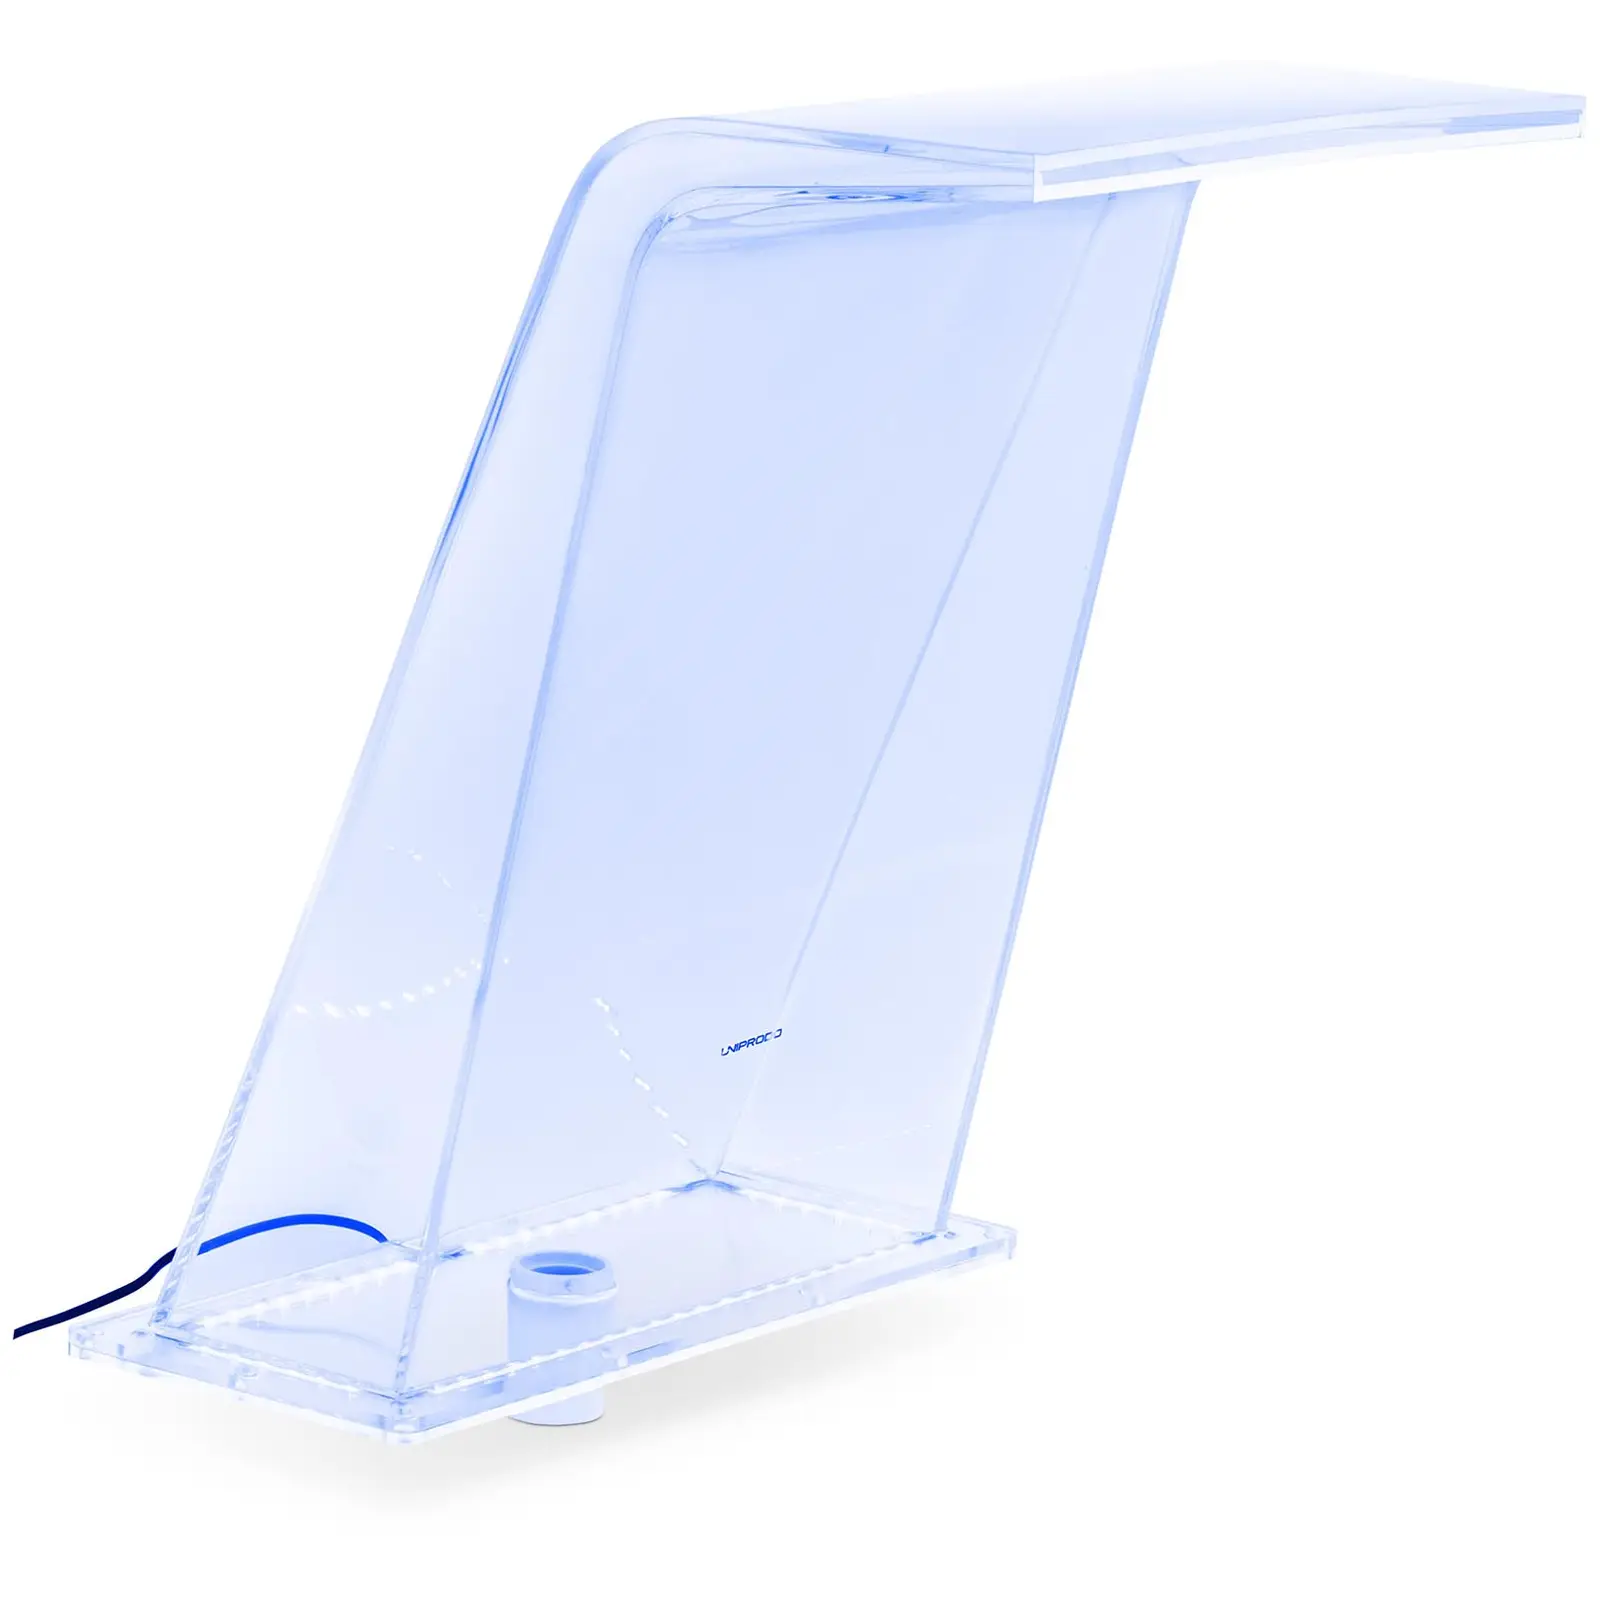 Medence szökőkút - 45 cm - LED világítás - kék / fehér